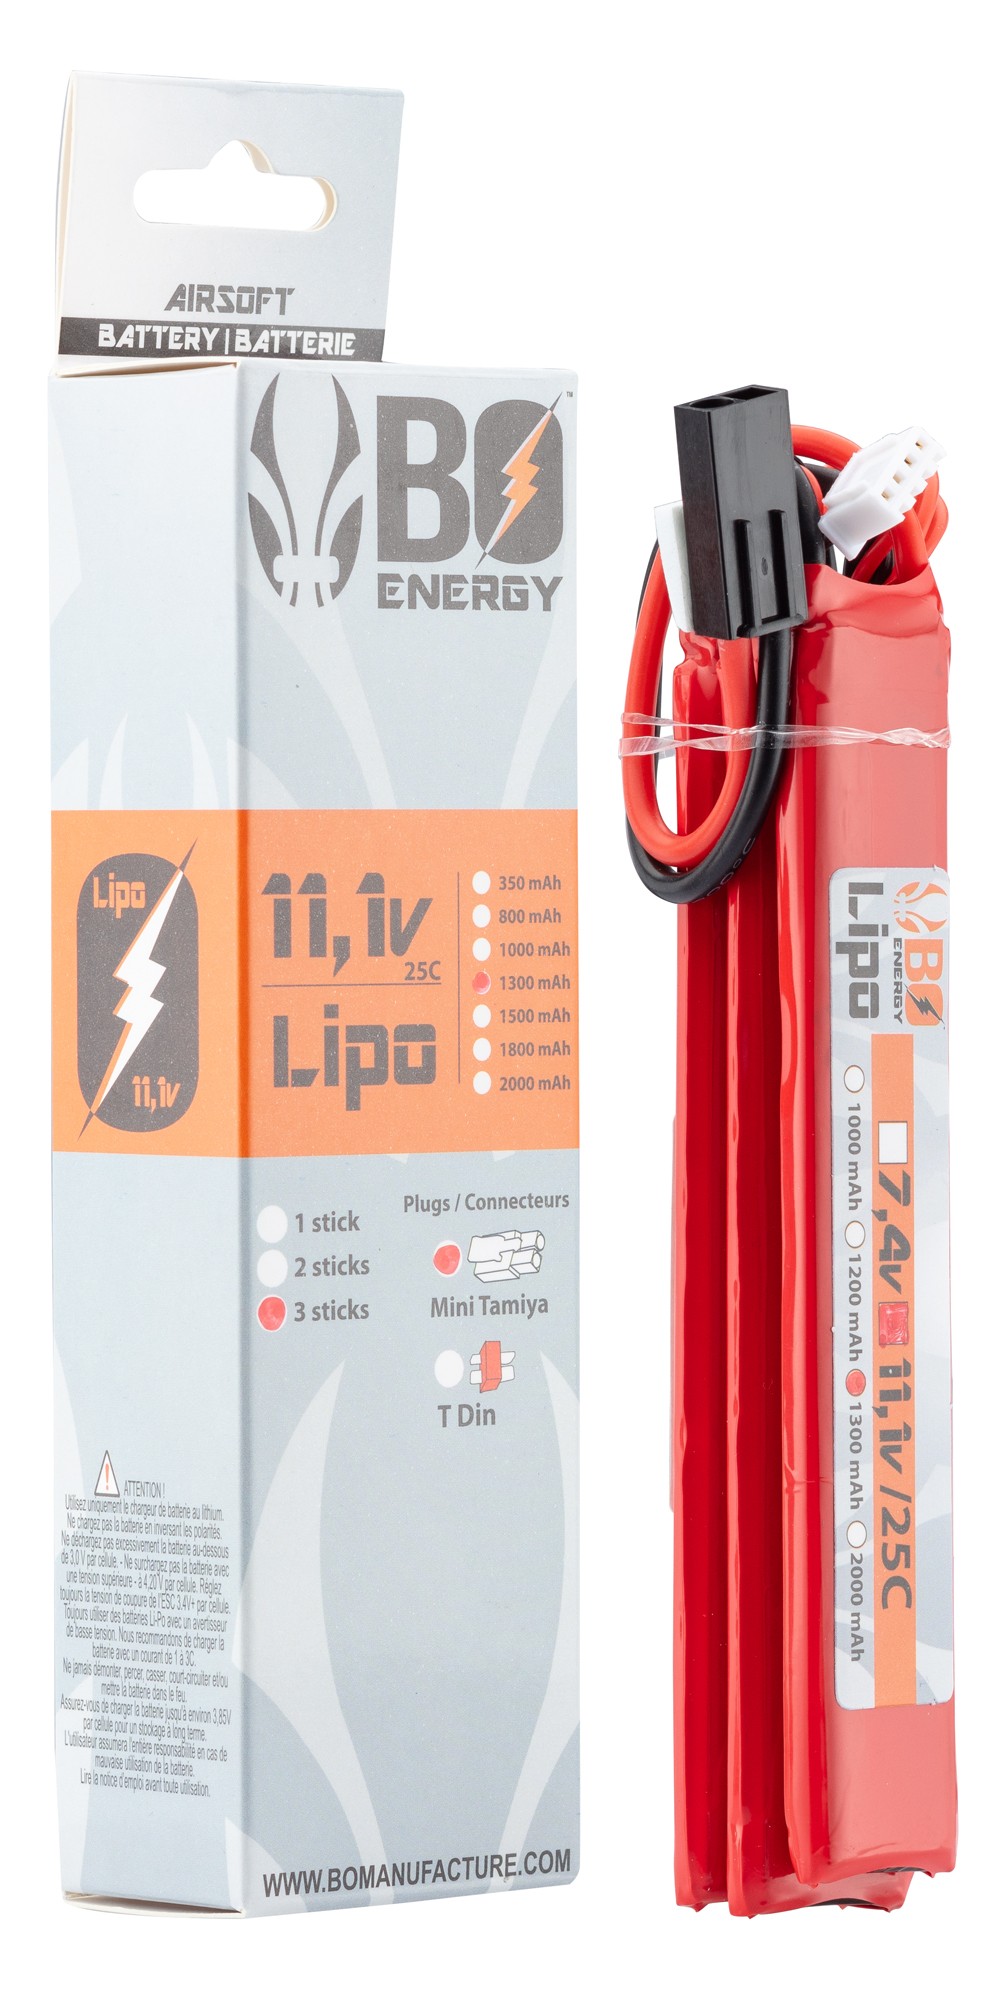 A63018-3 Batterie Lipo 3S 11.1V 1300mAh 25C 3 sticks